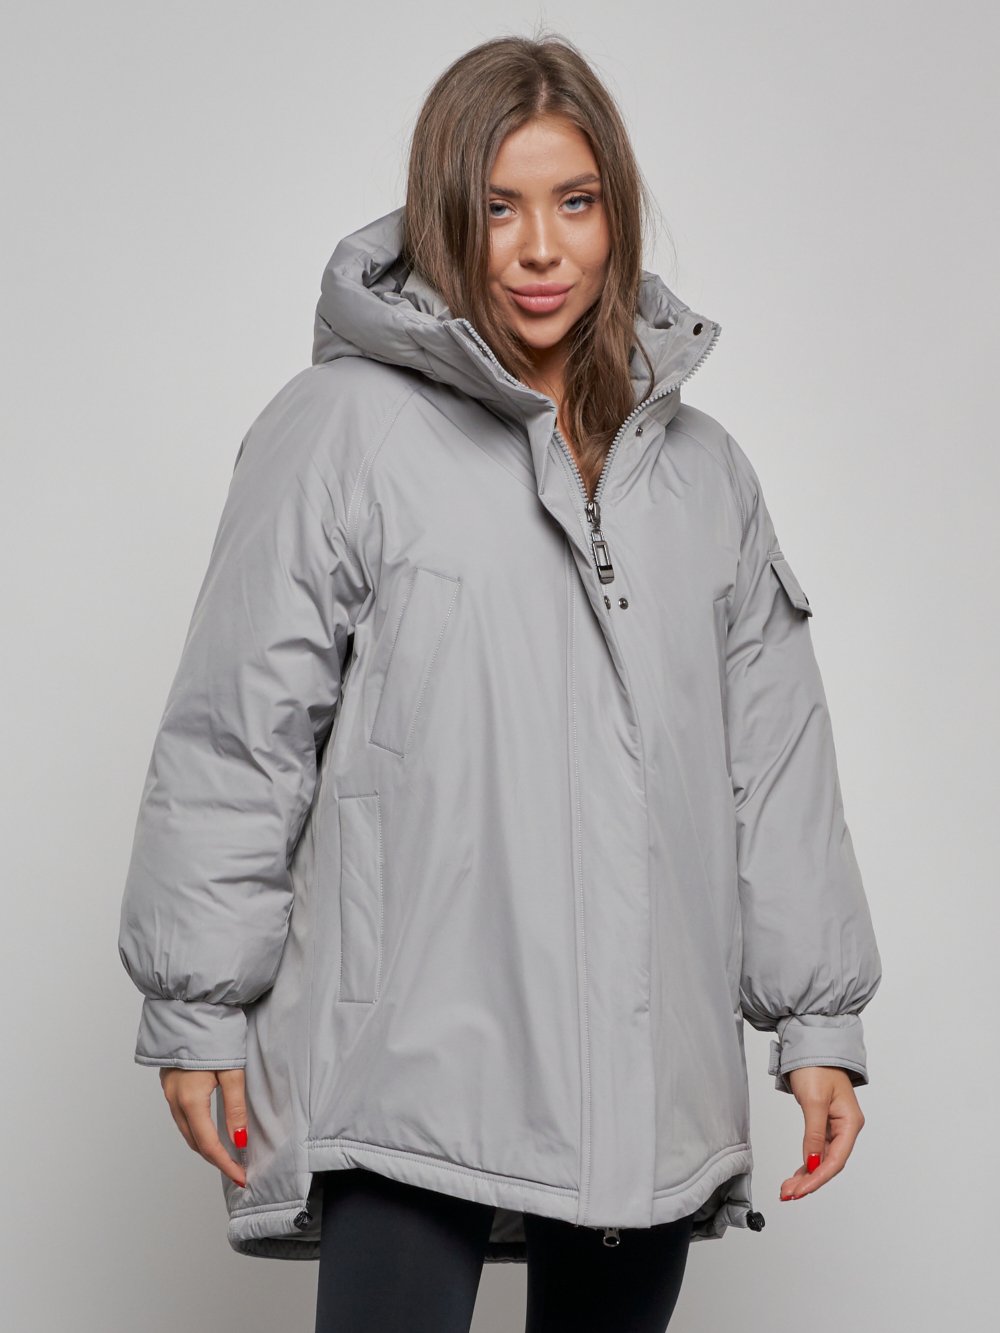 Купить куртку женскую оптом от производителя недорого в Москве 52311Sr 1